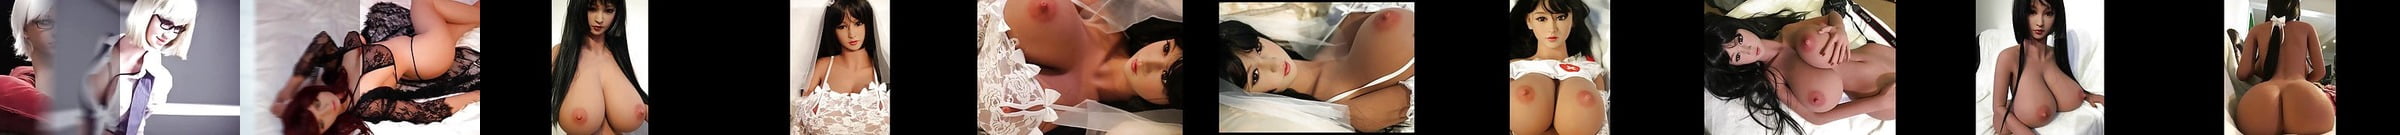 出演女優・男優 Japanese Blowjob ポルノビデオ 15 Xhamster